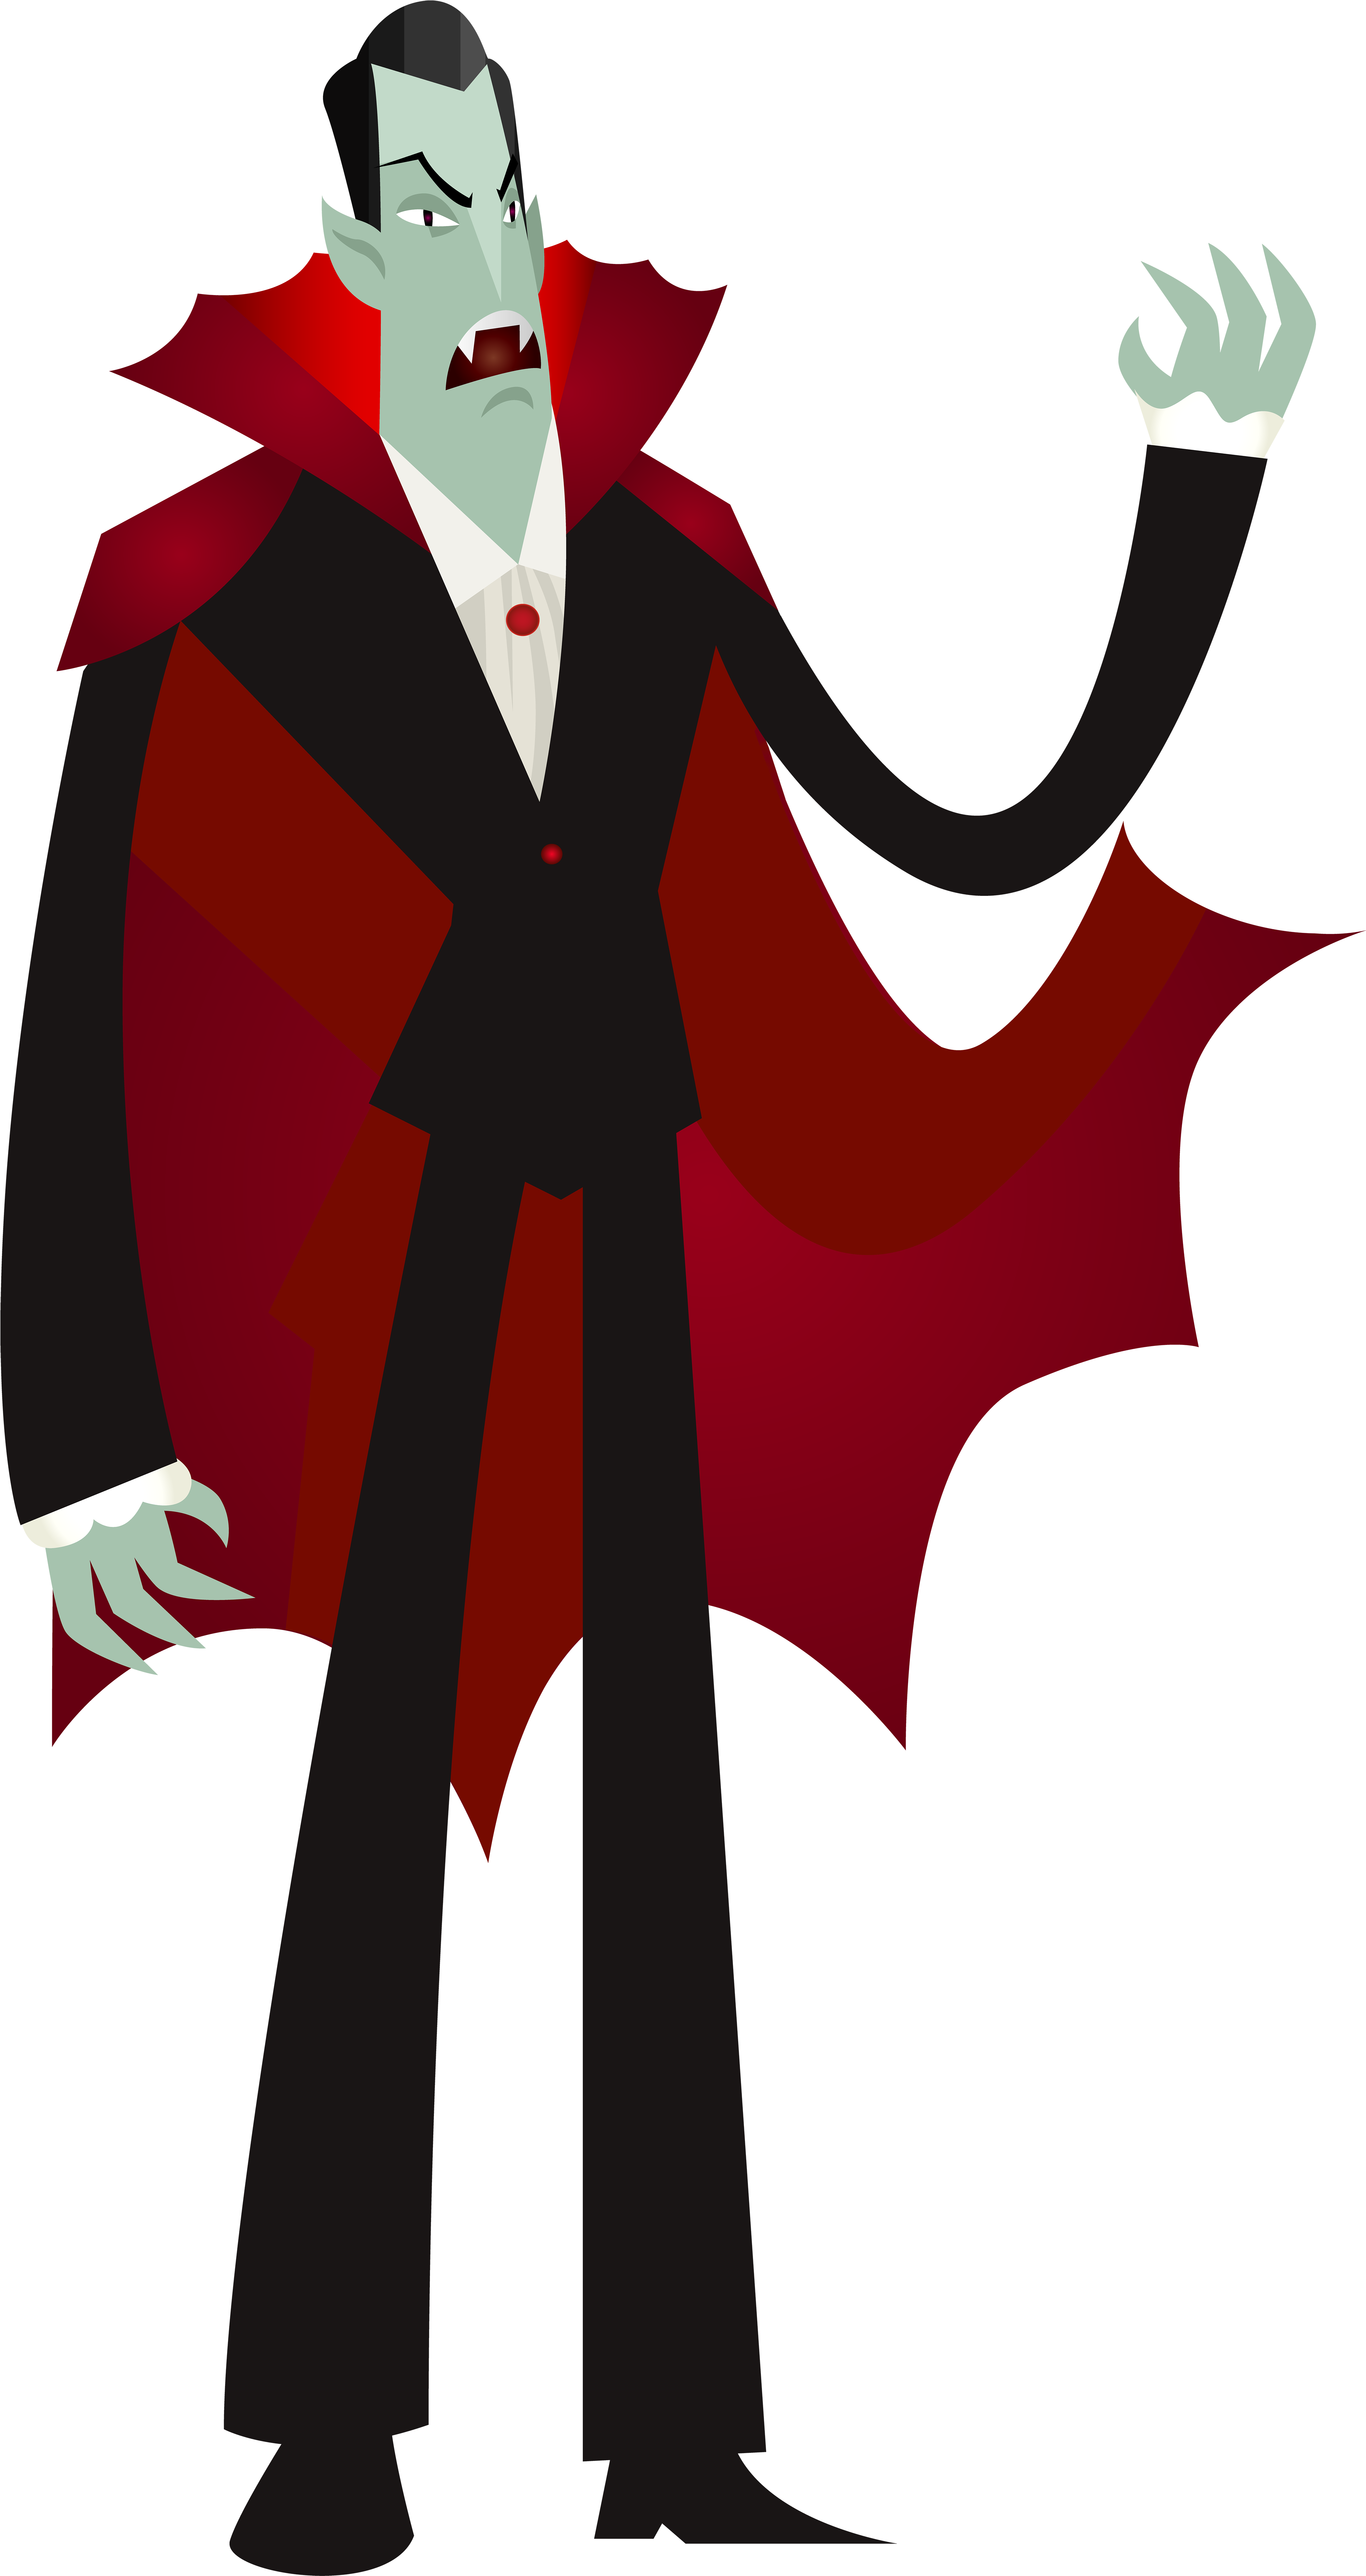 Cartoon Dracula Character